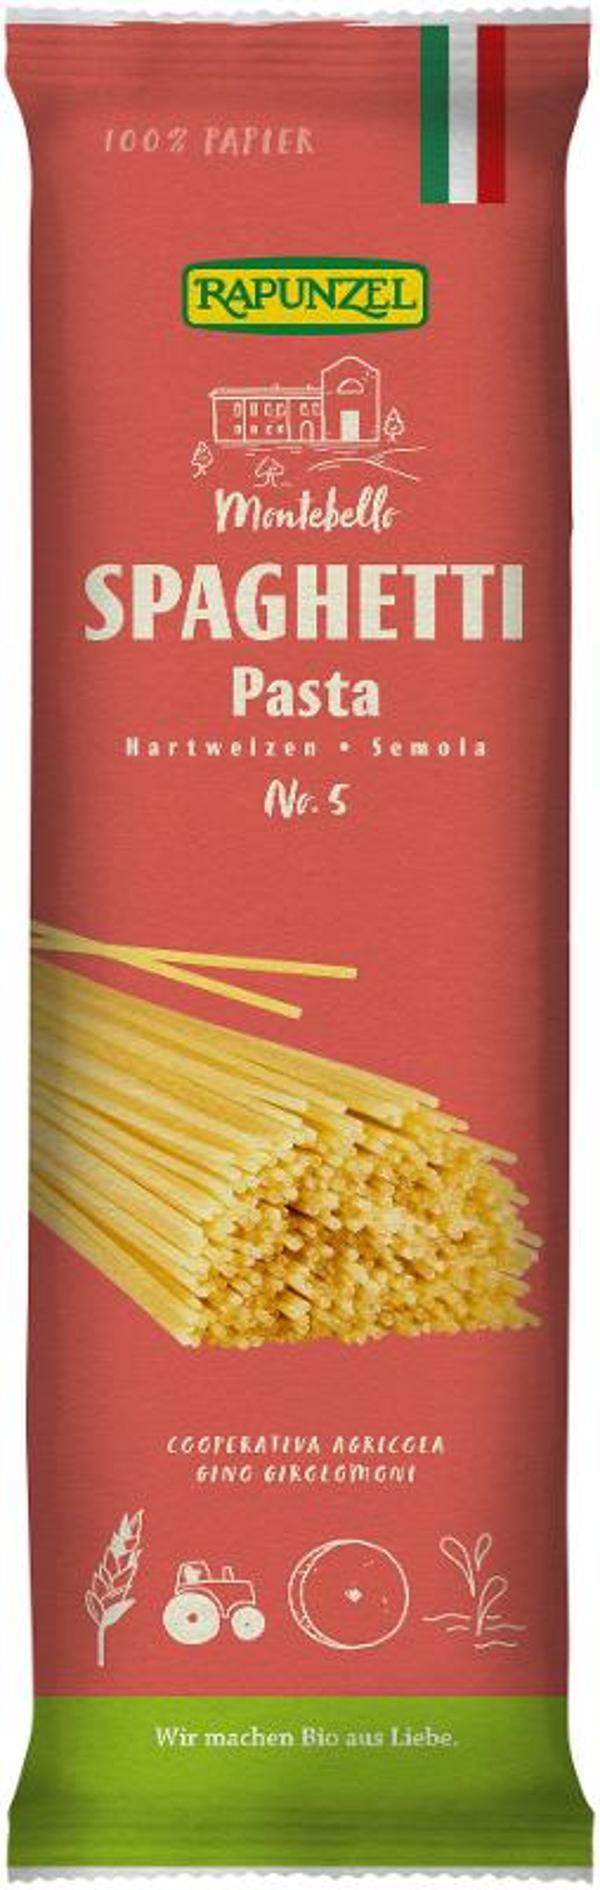 Produktfoto zu Spaghetti Semola, no.5